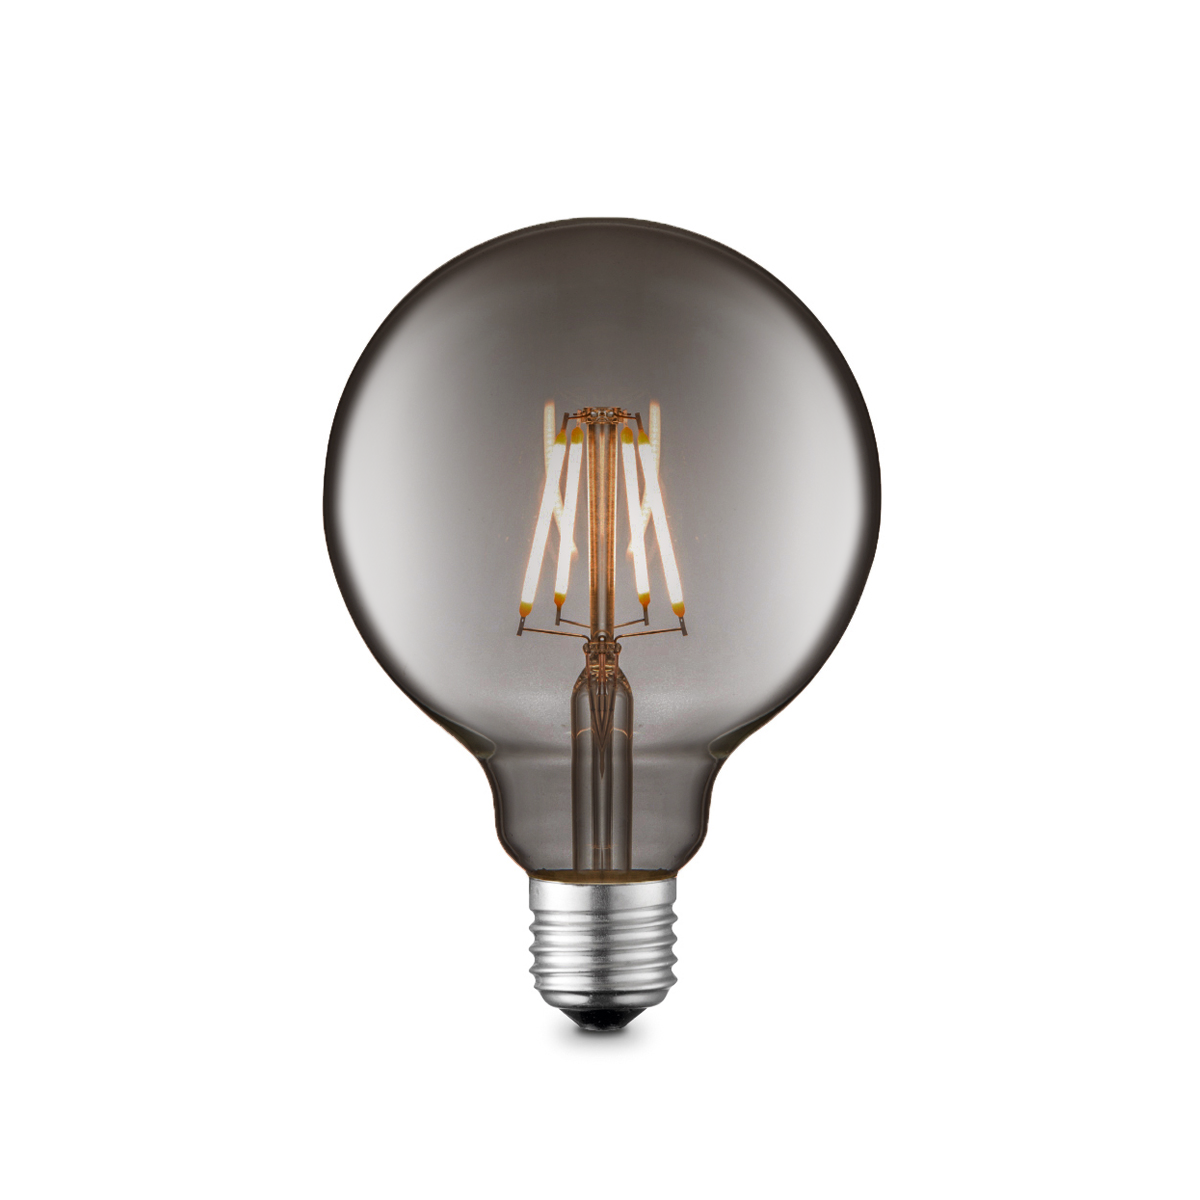 Tangla lighting - TLB-8003-02TM - LED Light Bulb Deco filament - G80 2W titanium - non dimmable - E27